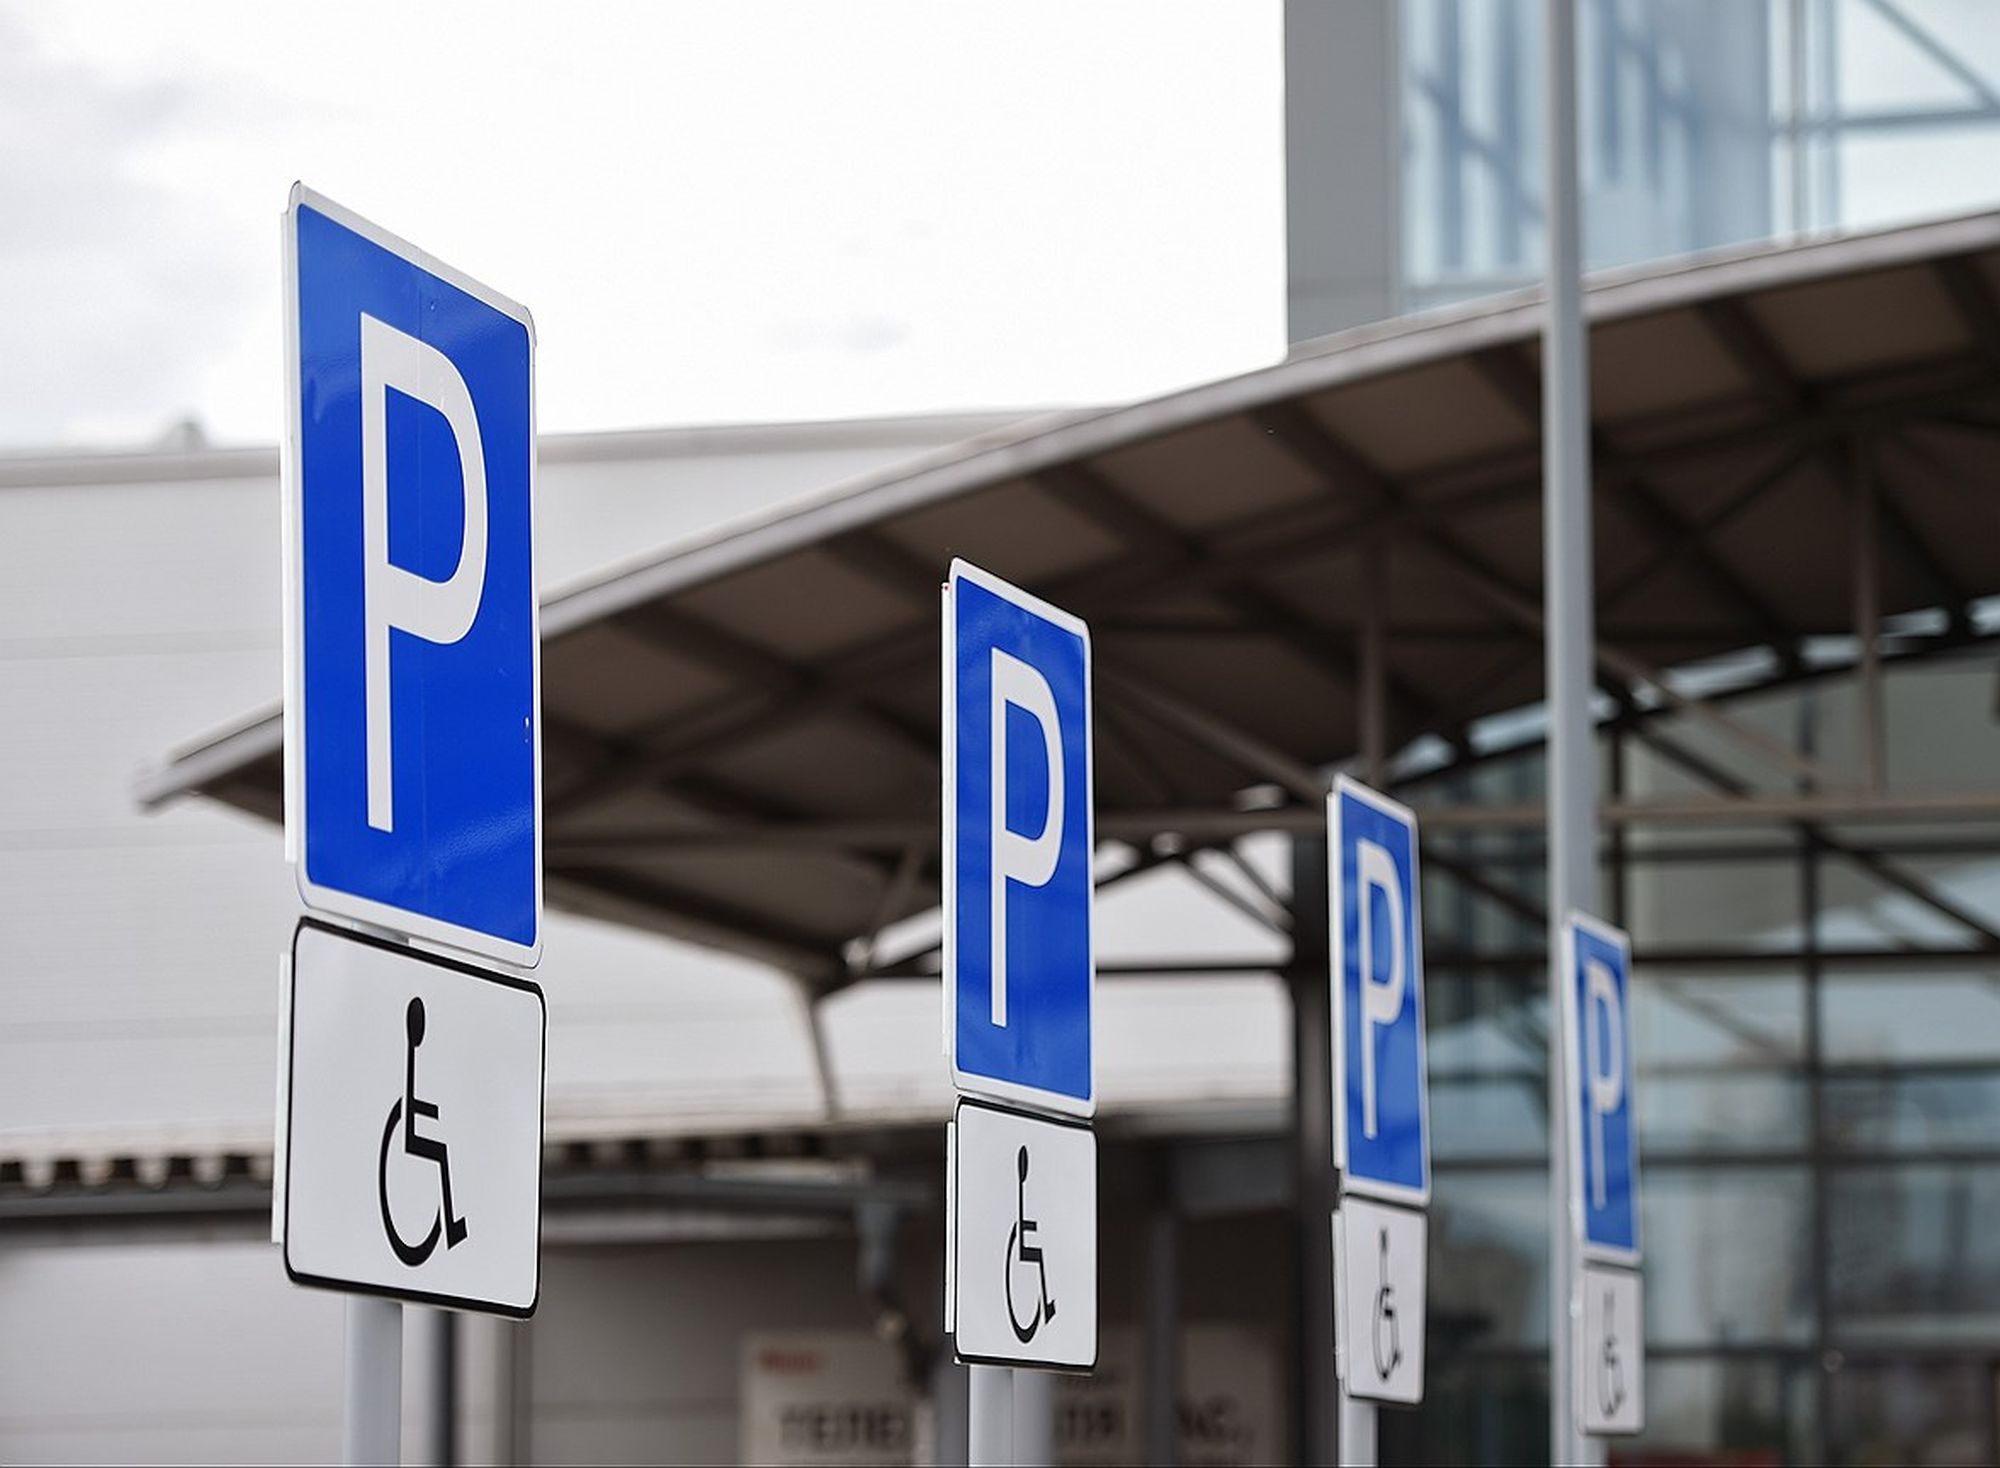 Бесплатная парковка для инвалидов 2 группы в москве, Юридическая помощь